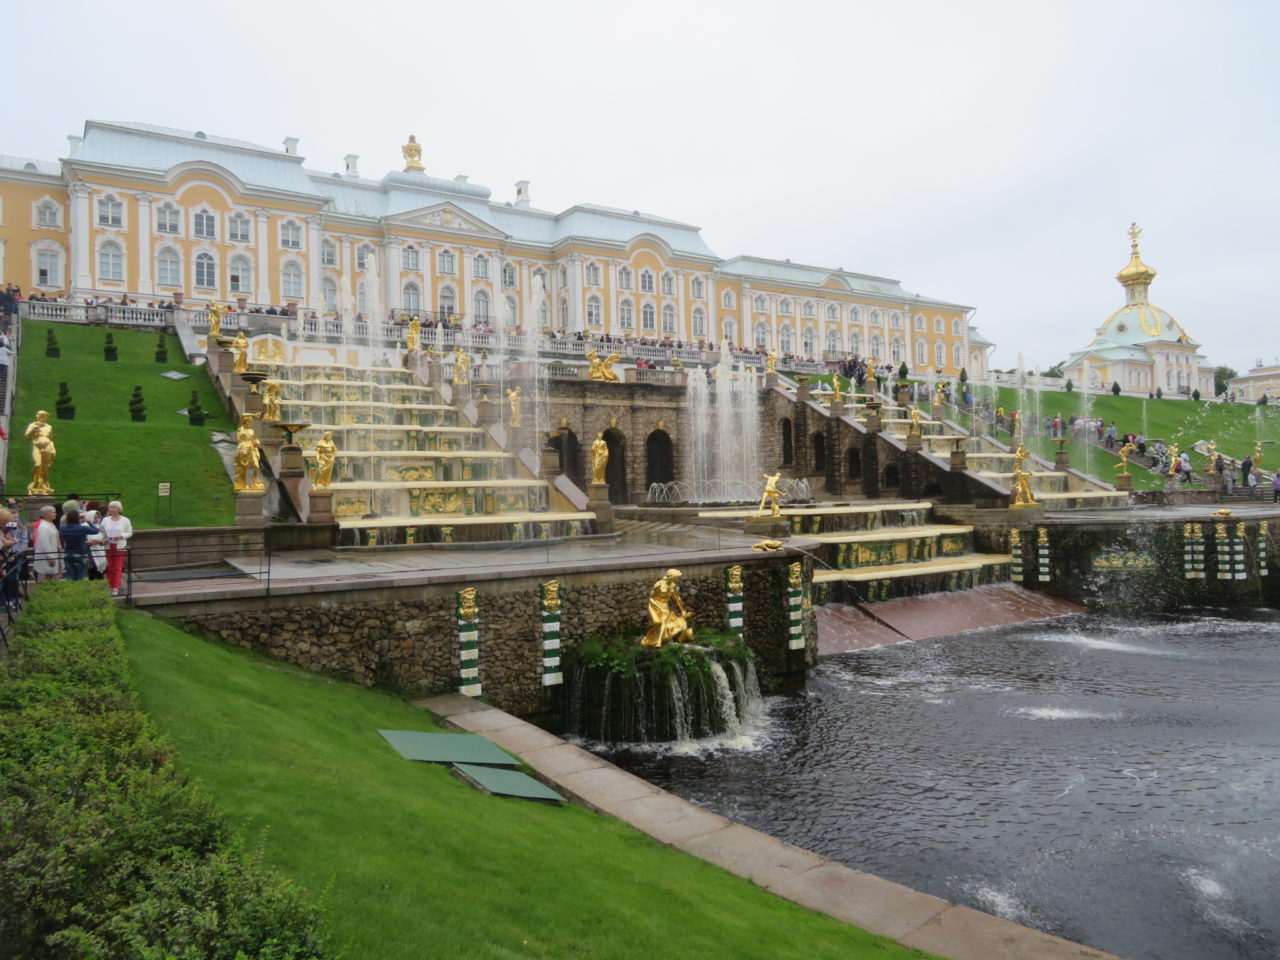 Peterhof Palace in Peterhof, near St. Petersburg, Russia